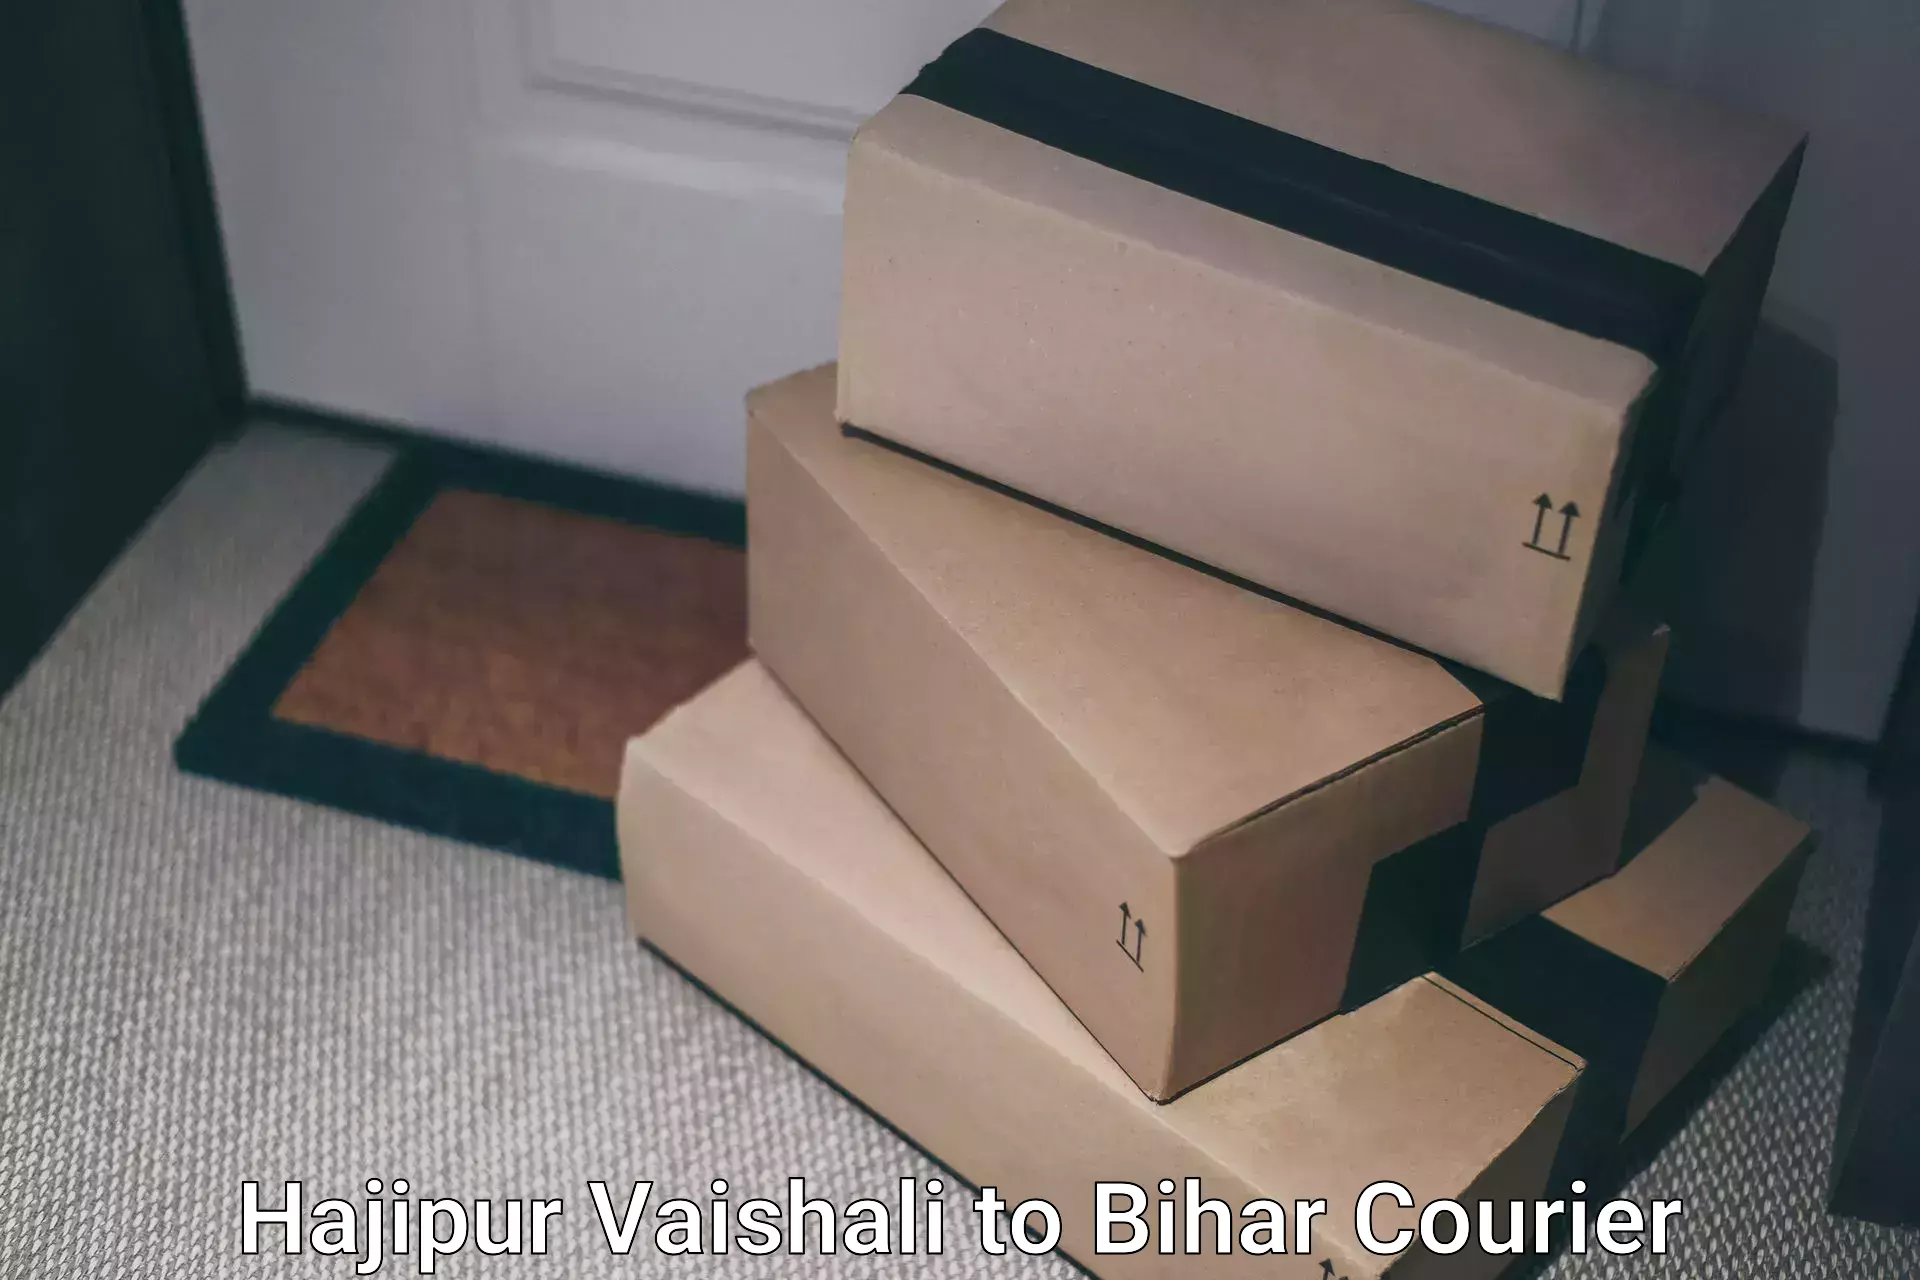 International courier networks Hajipur Vaishali to Darbhanga